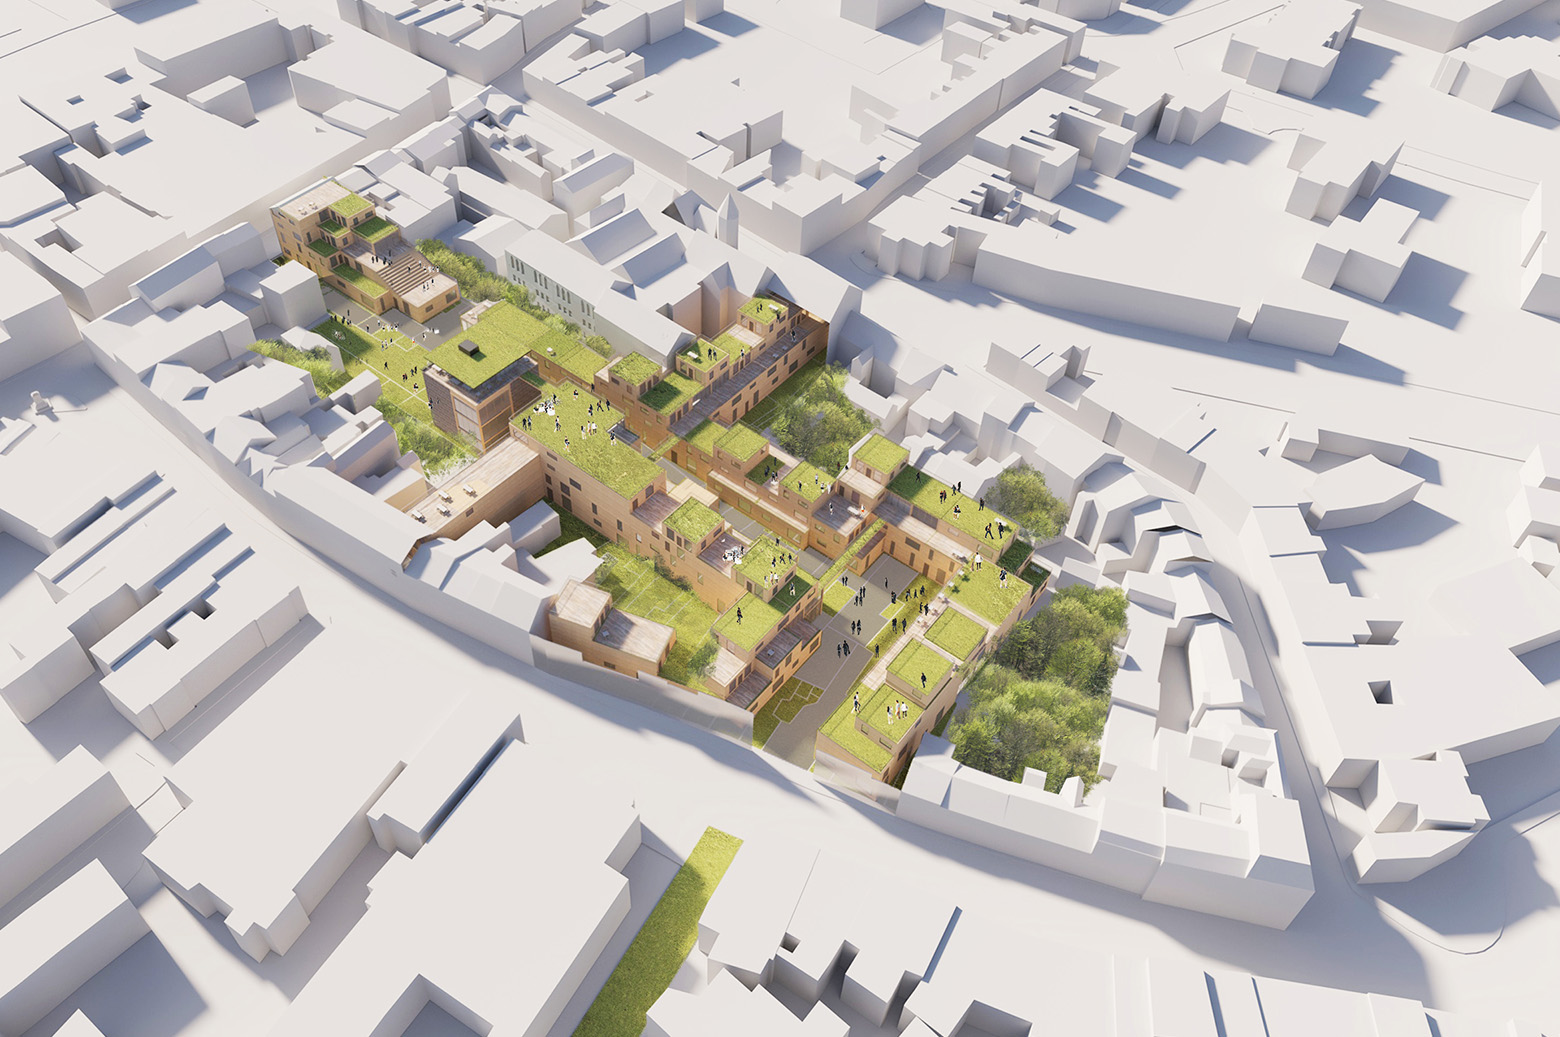 Green roof render CoHousing Sligo Towncentre